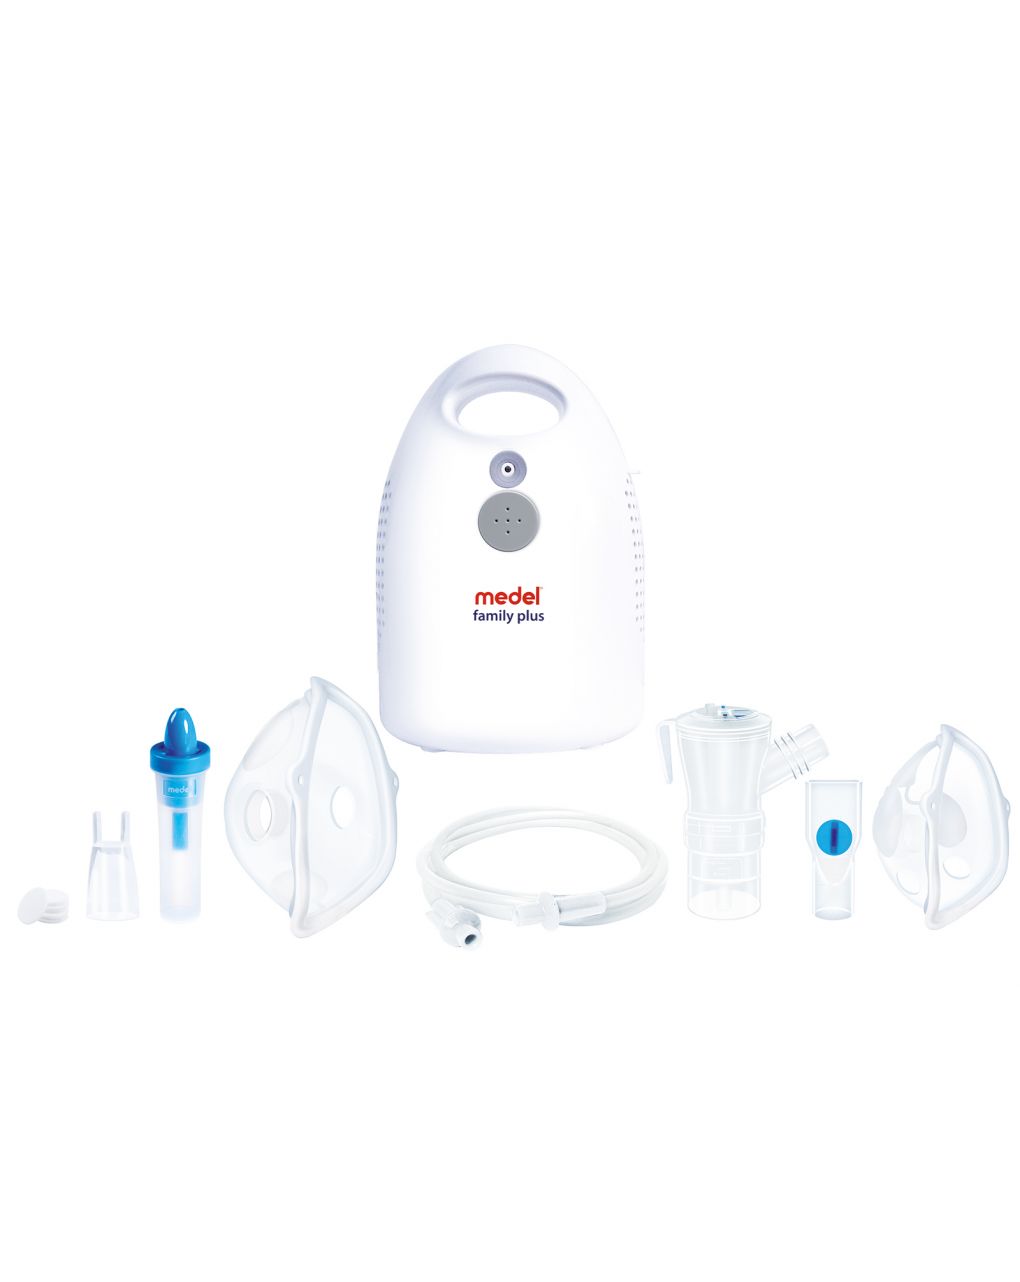 Medel -family plus aerosol a compressore con doccia nasale - Medel